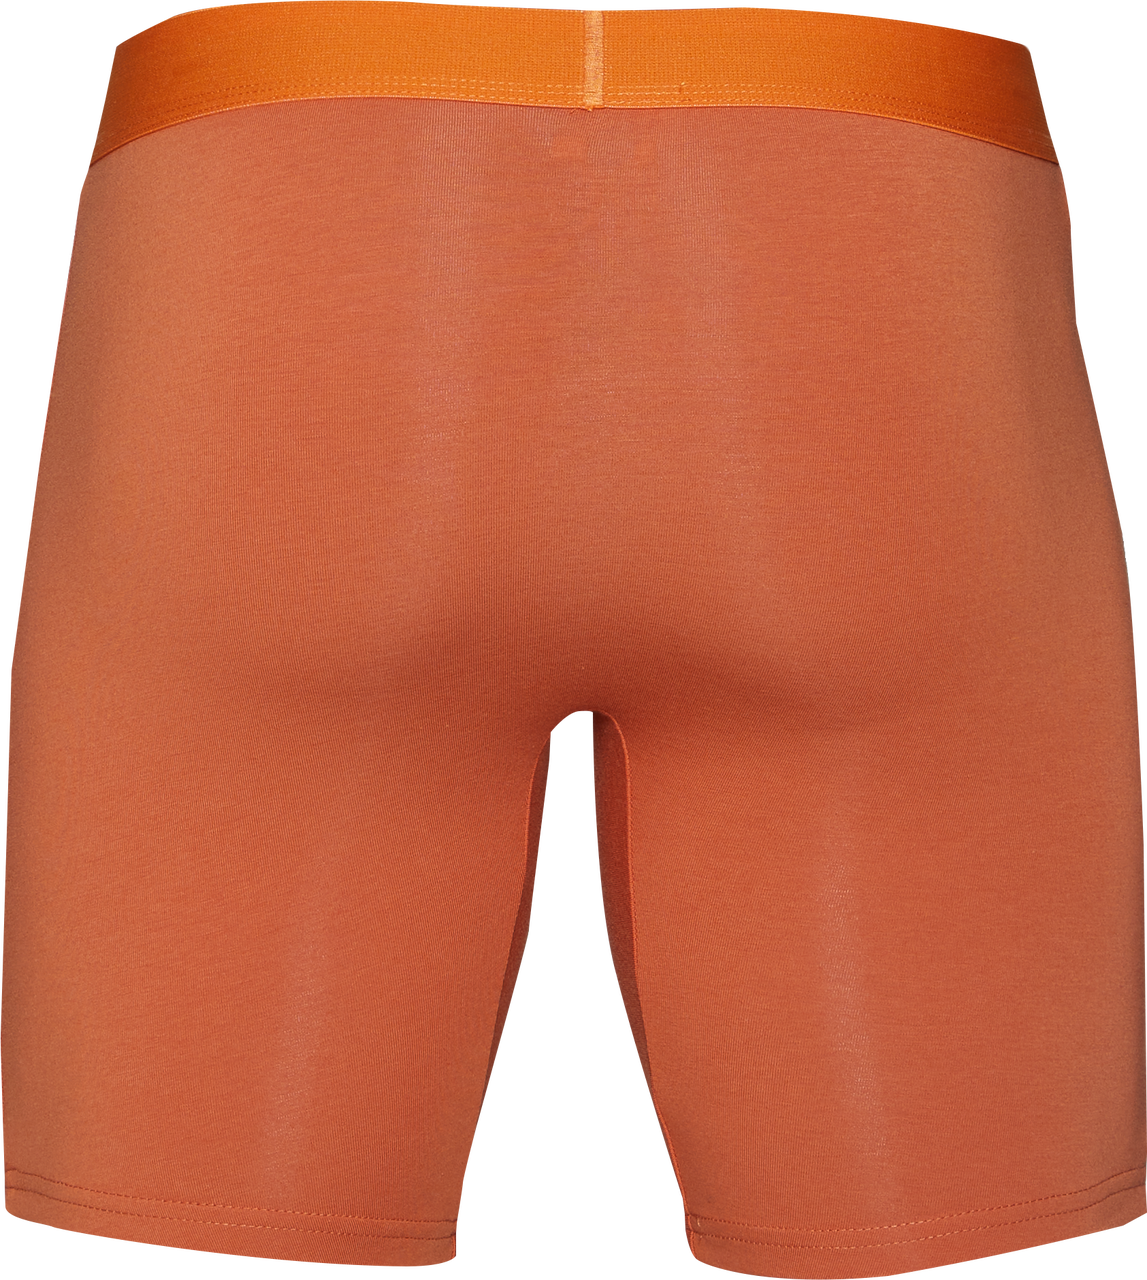 Biker Brief in Wood Orange by Wood Underwear